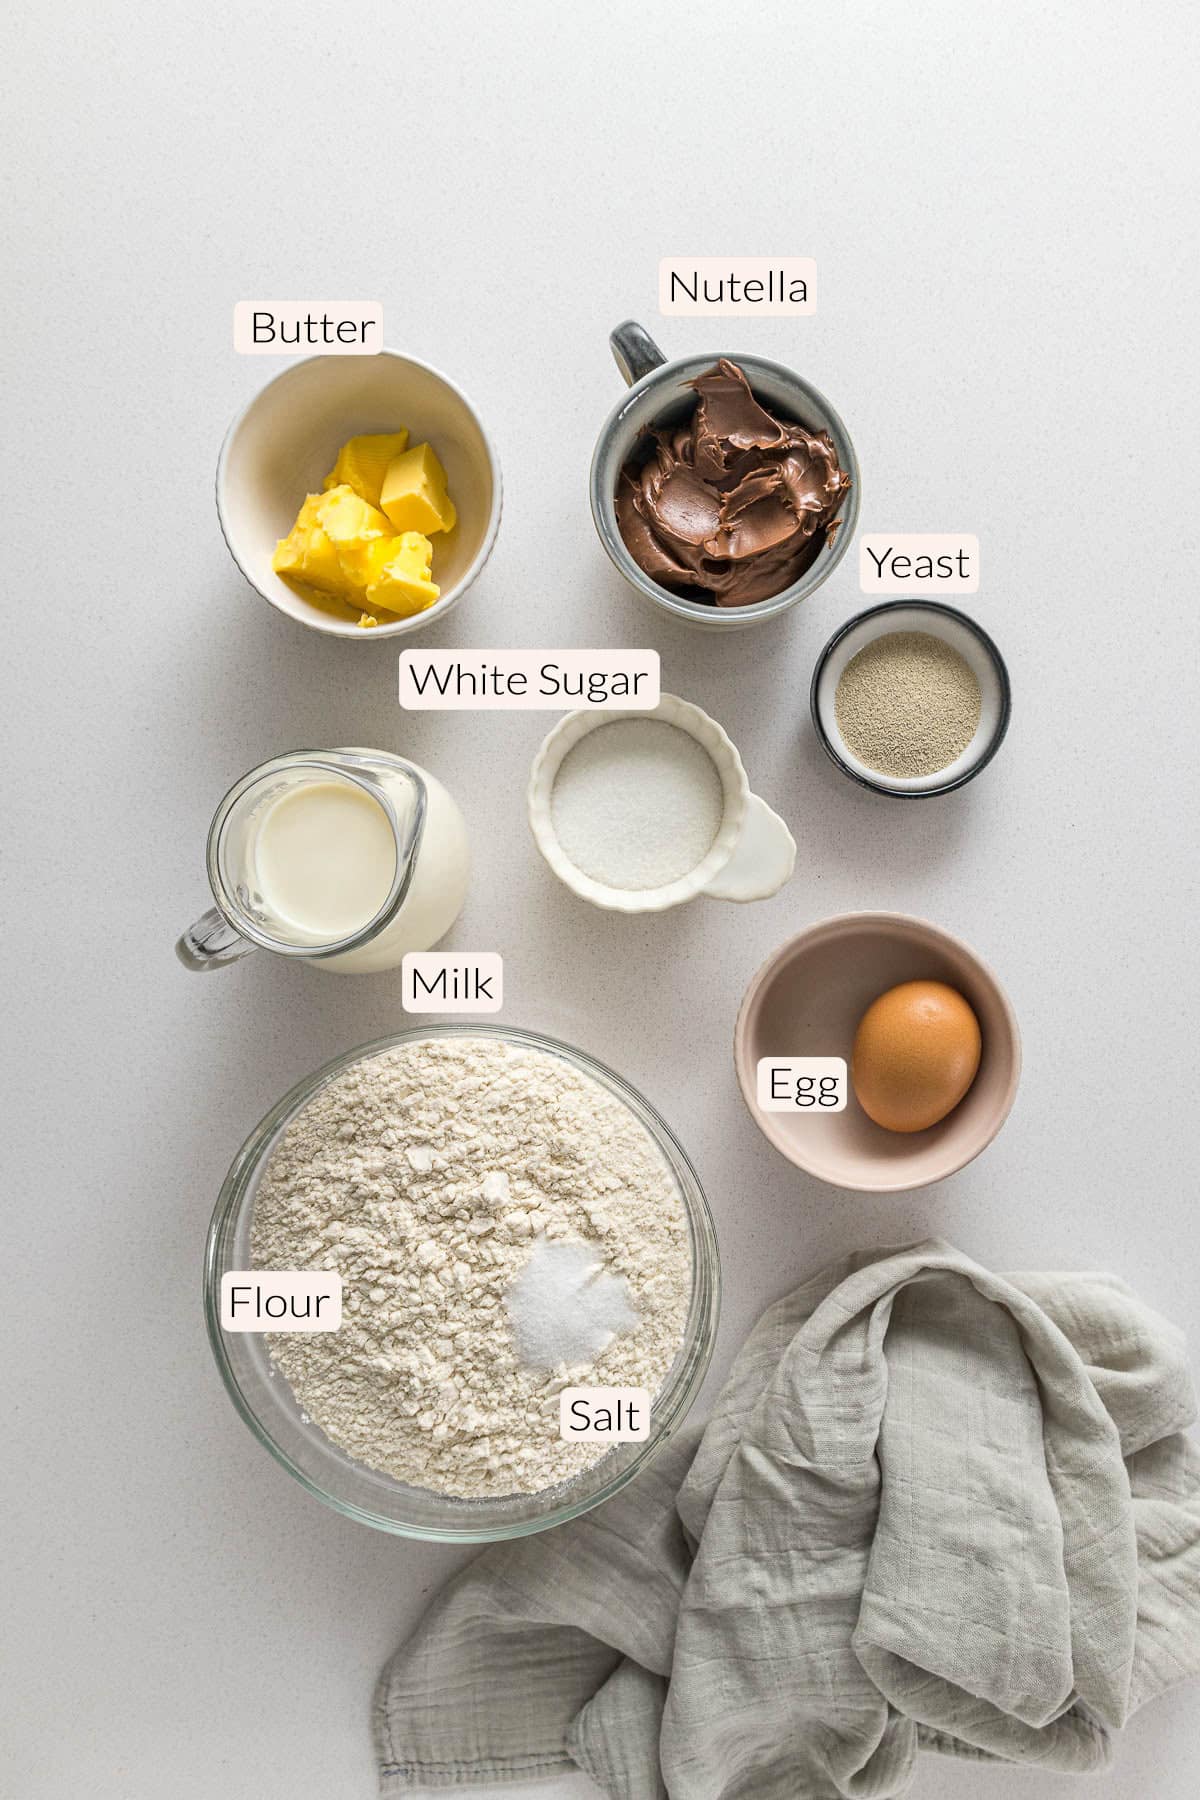 Nutella bread ingredients - Nutella, butter, milk, sugar, yeast, egg, flour and salt.